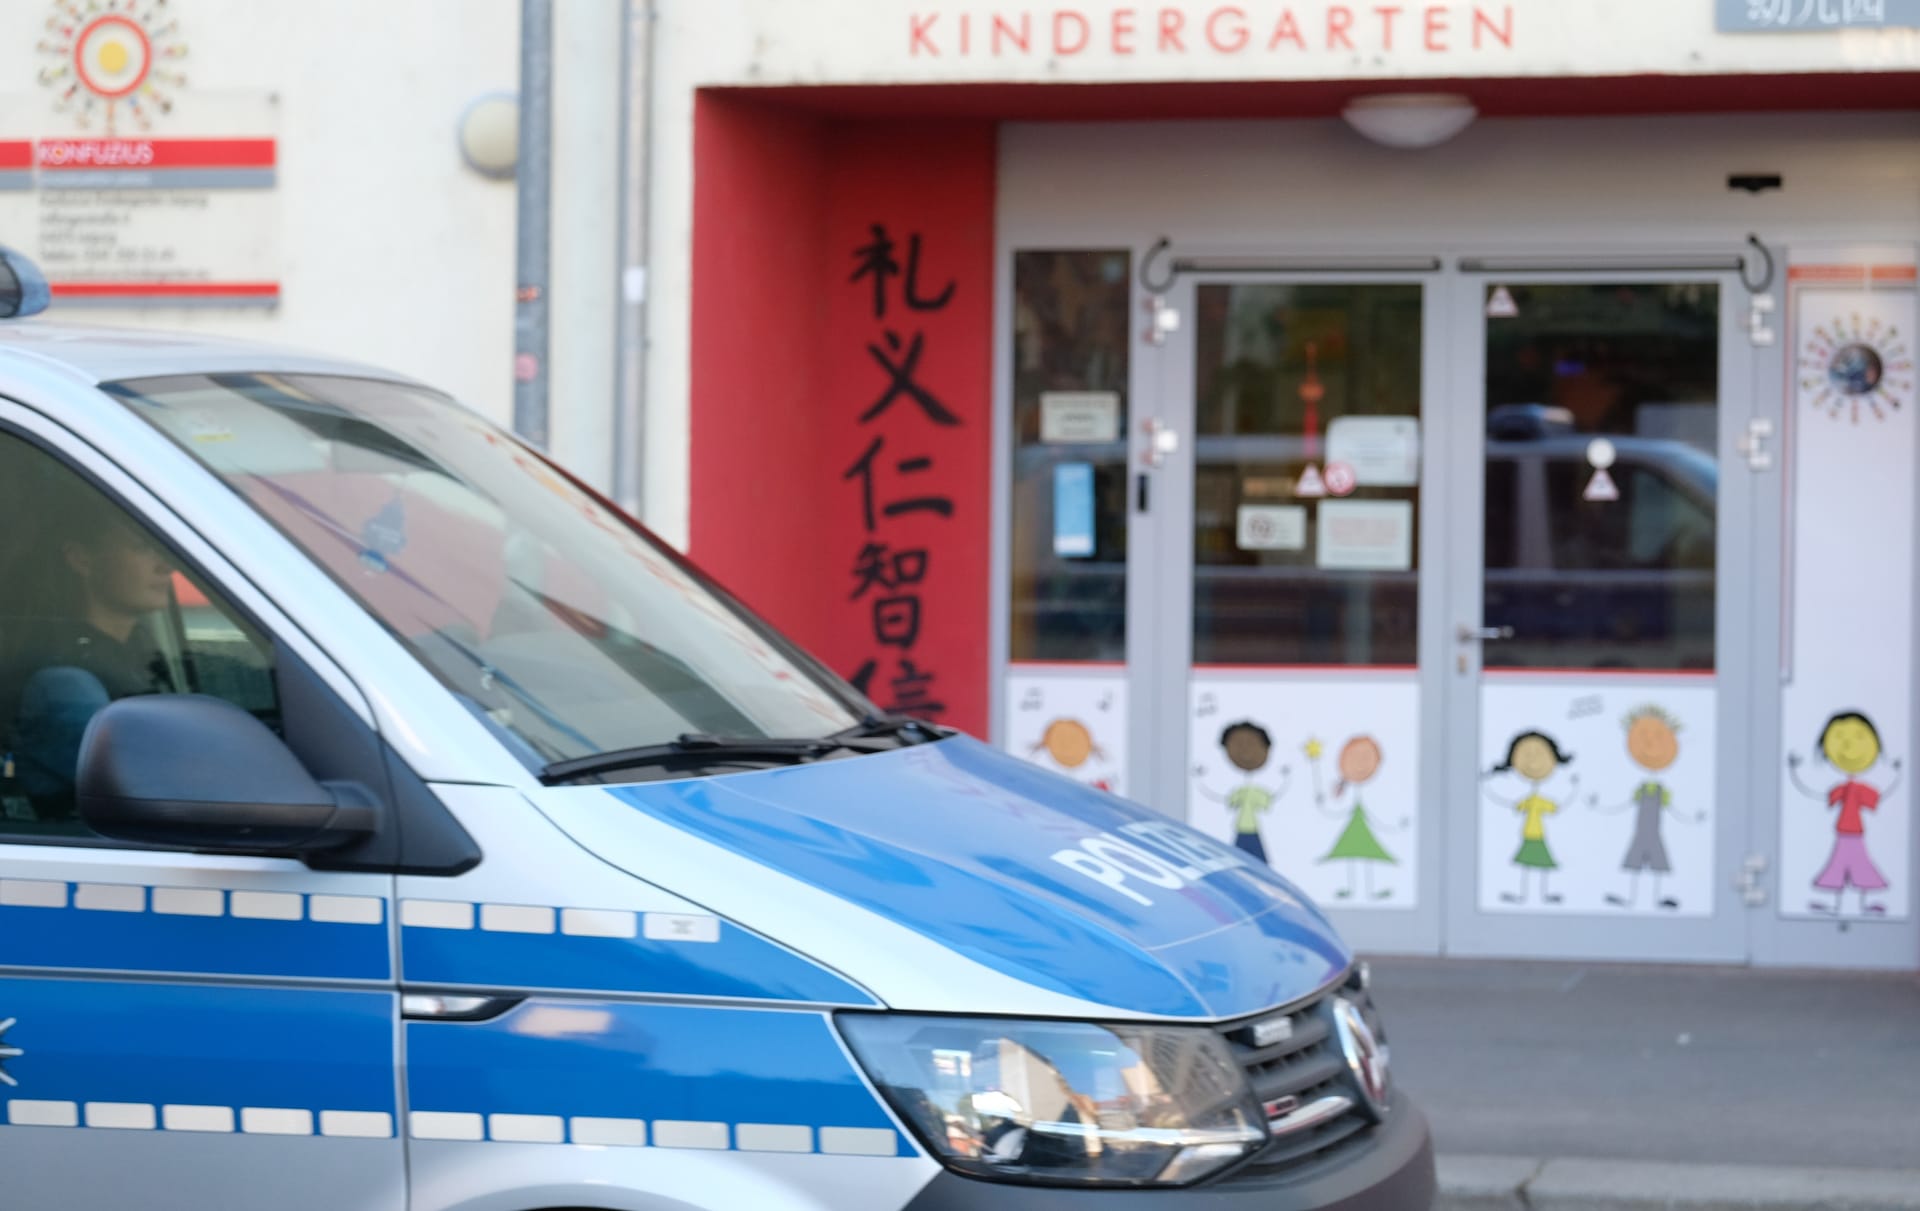 Ein Polizeifahrzeug fährt an einer Kindertagesstätte in Leizipg vorbei: Die Kitas werden bedroht.